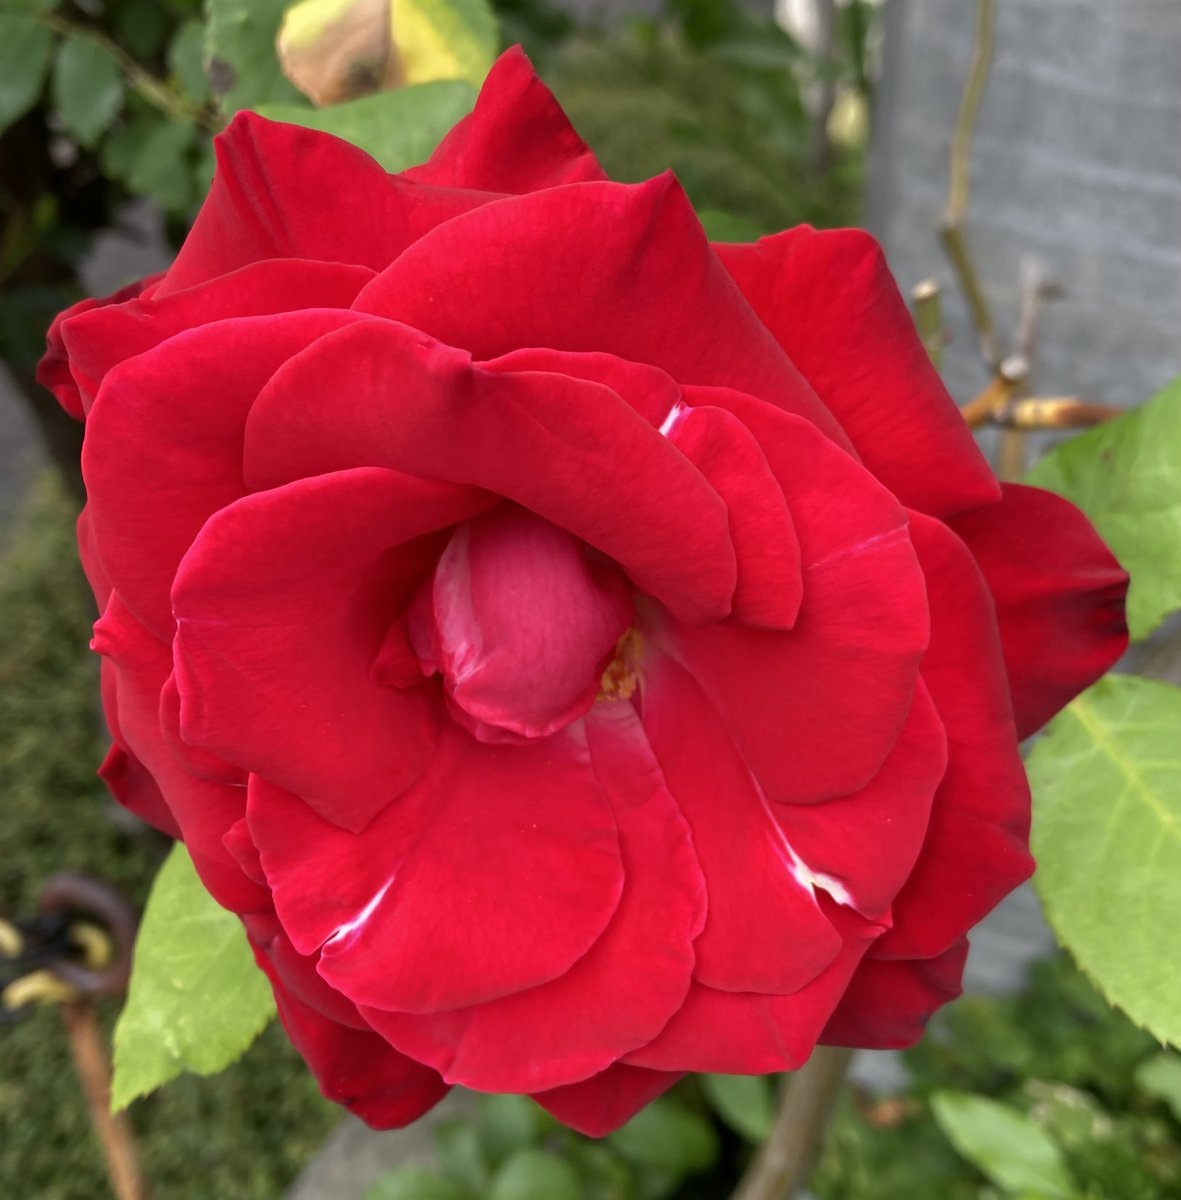 おはようございます☀
三島市は朝6時半18℃です。
昨日スーパーに行った時に向かいの家の庭に大きな薔薇が咲いていました♪